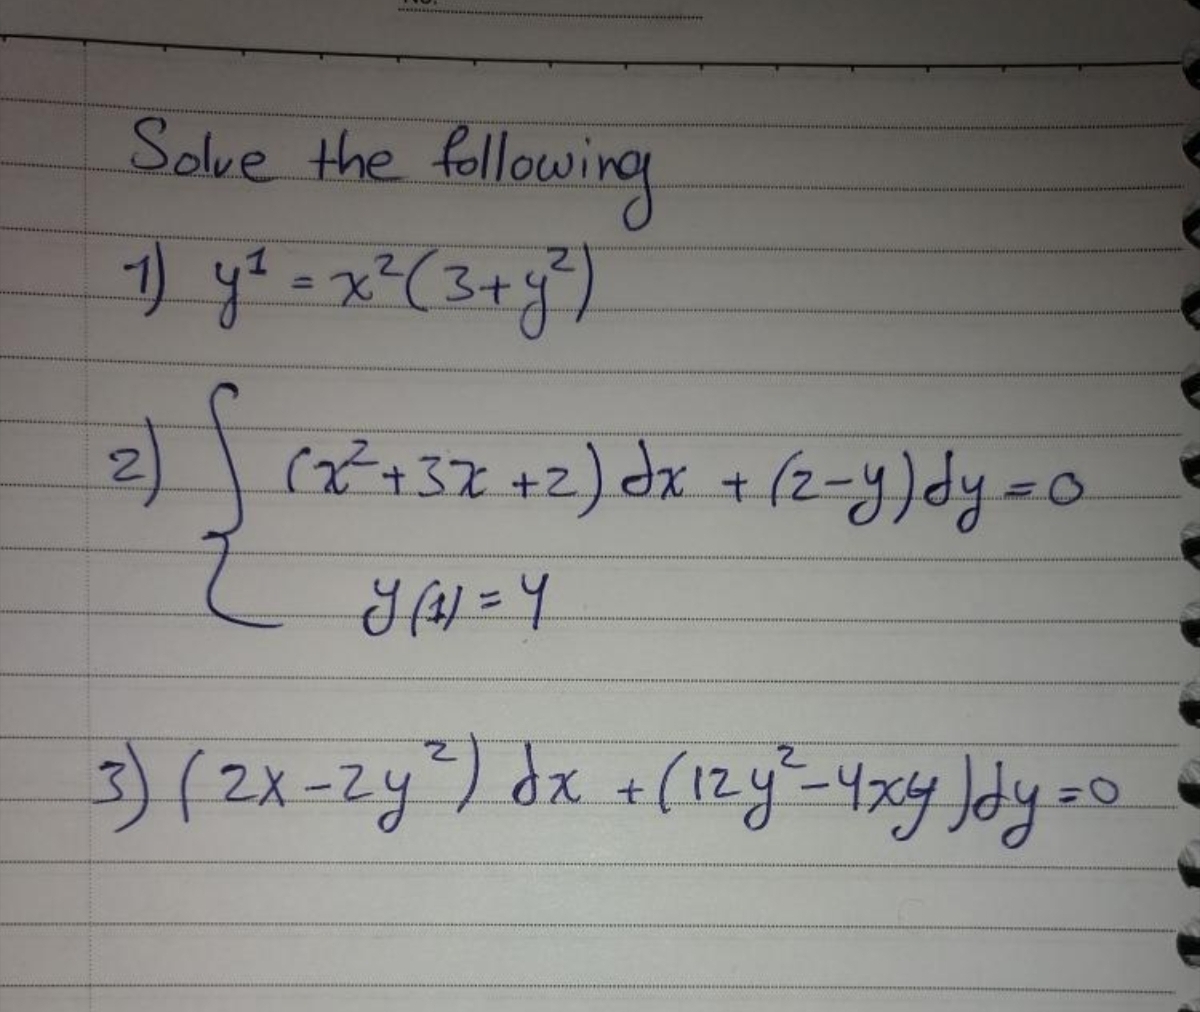 Solve the fellowing
) yt =x²(3+y")
2.
2)
(+37 +2) dx +(2-y)dy=0
3) (2x=zy) dx +(12y-4x4 Jdy=
